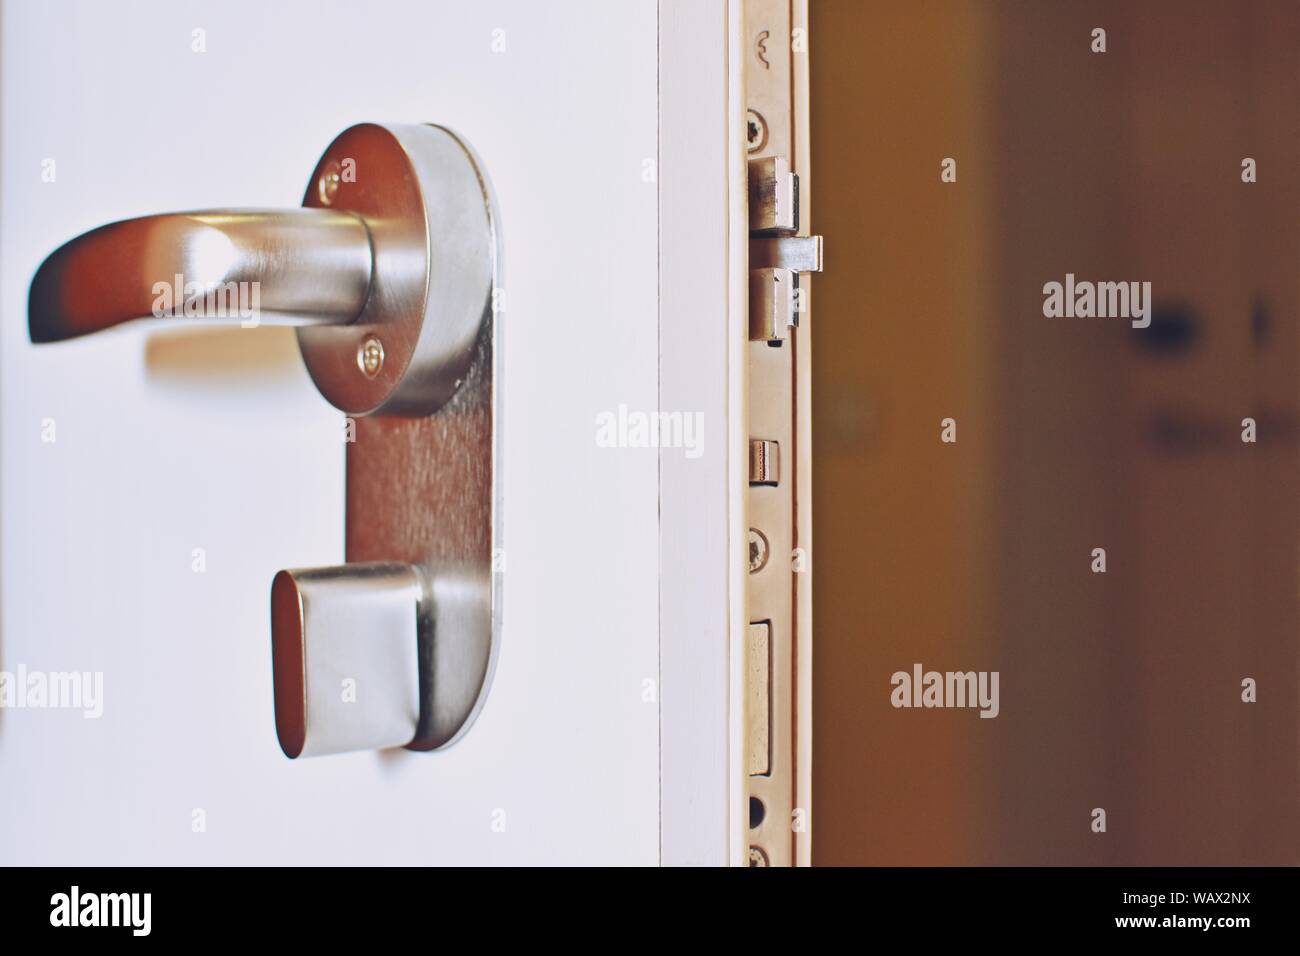 Close up of an open door with a metallic secure lock doorknob. Stock Photo